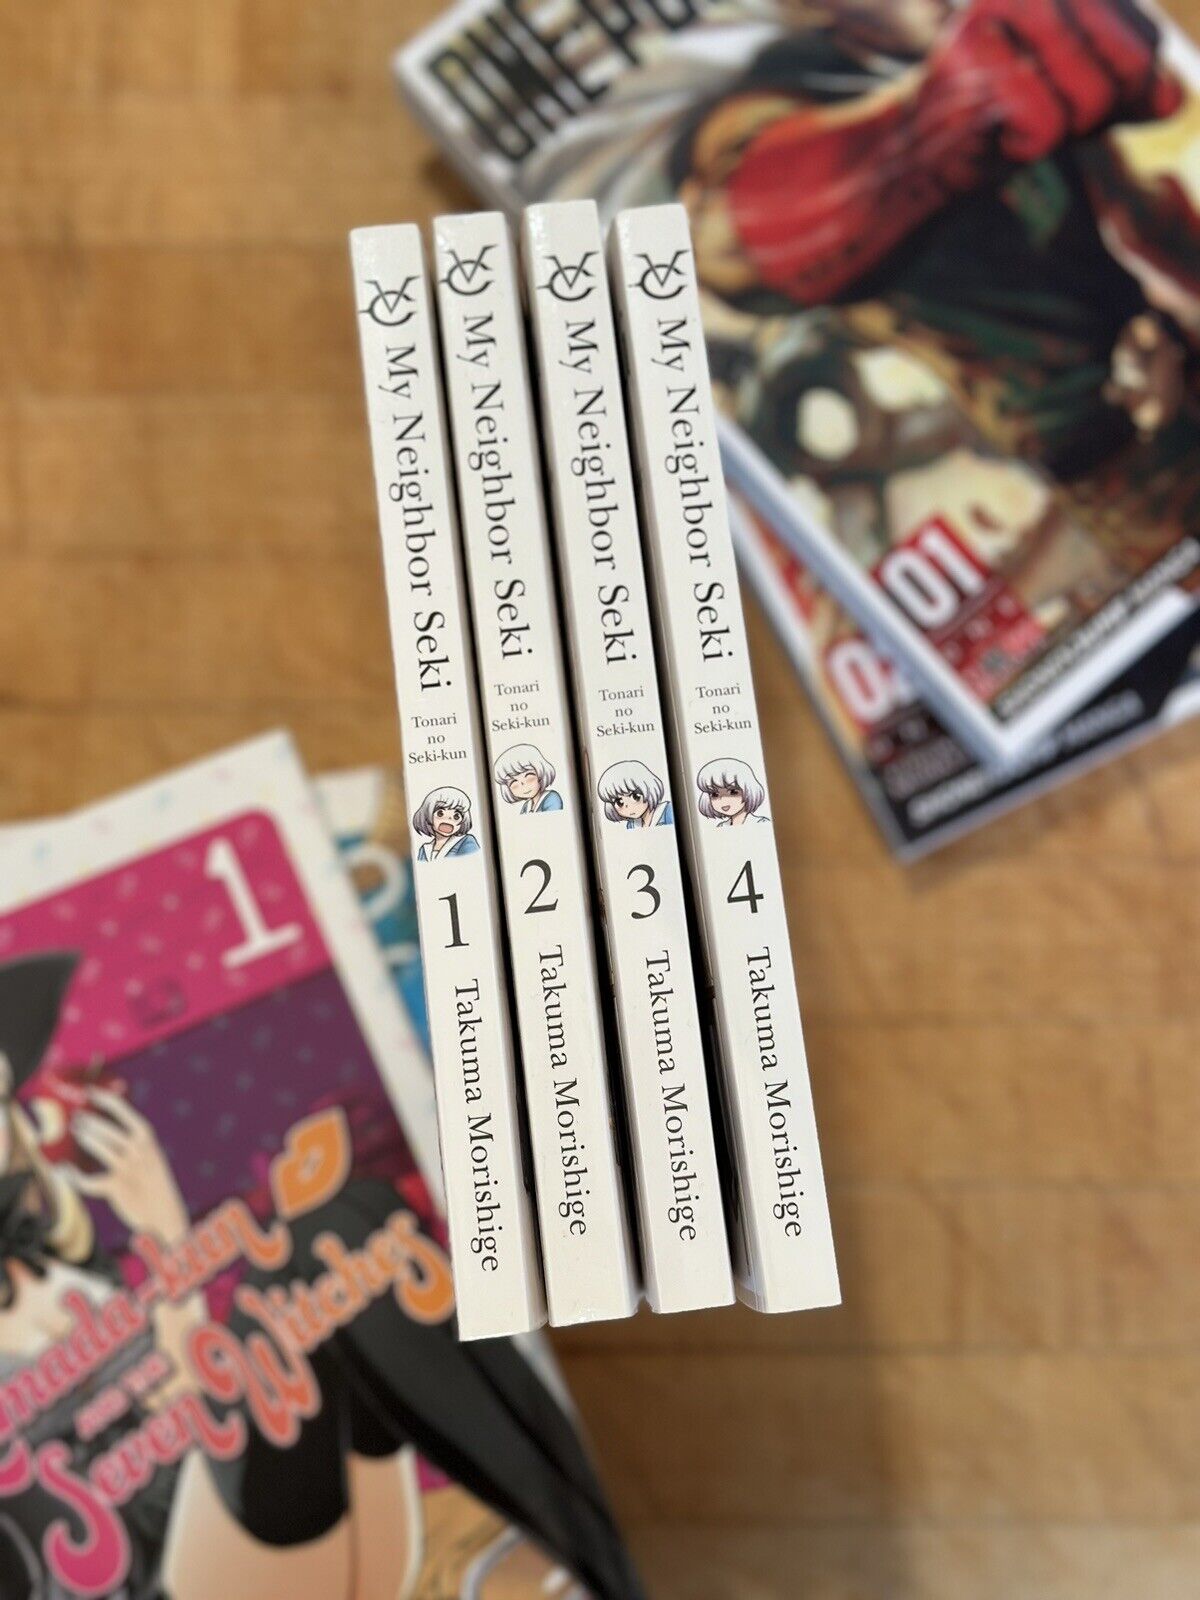 My Neighbor Seki, Vol. 1-4 Manga